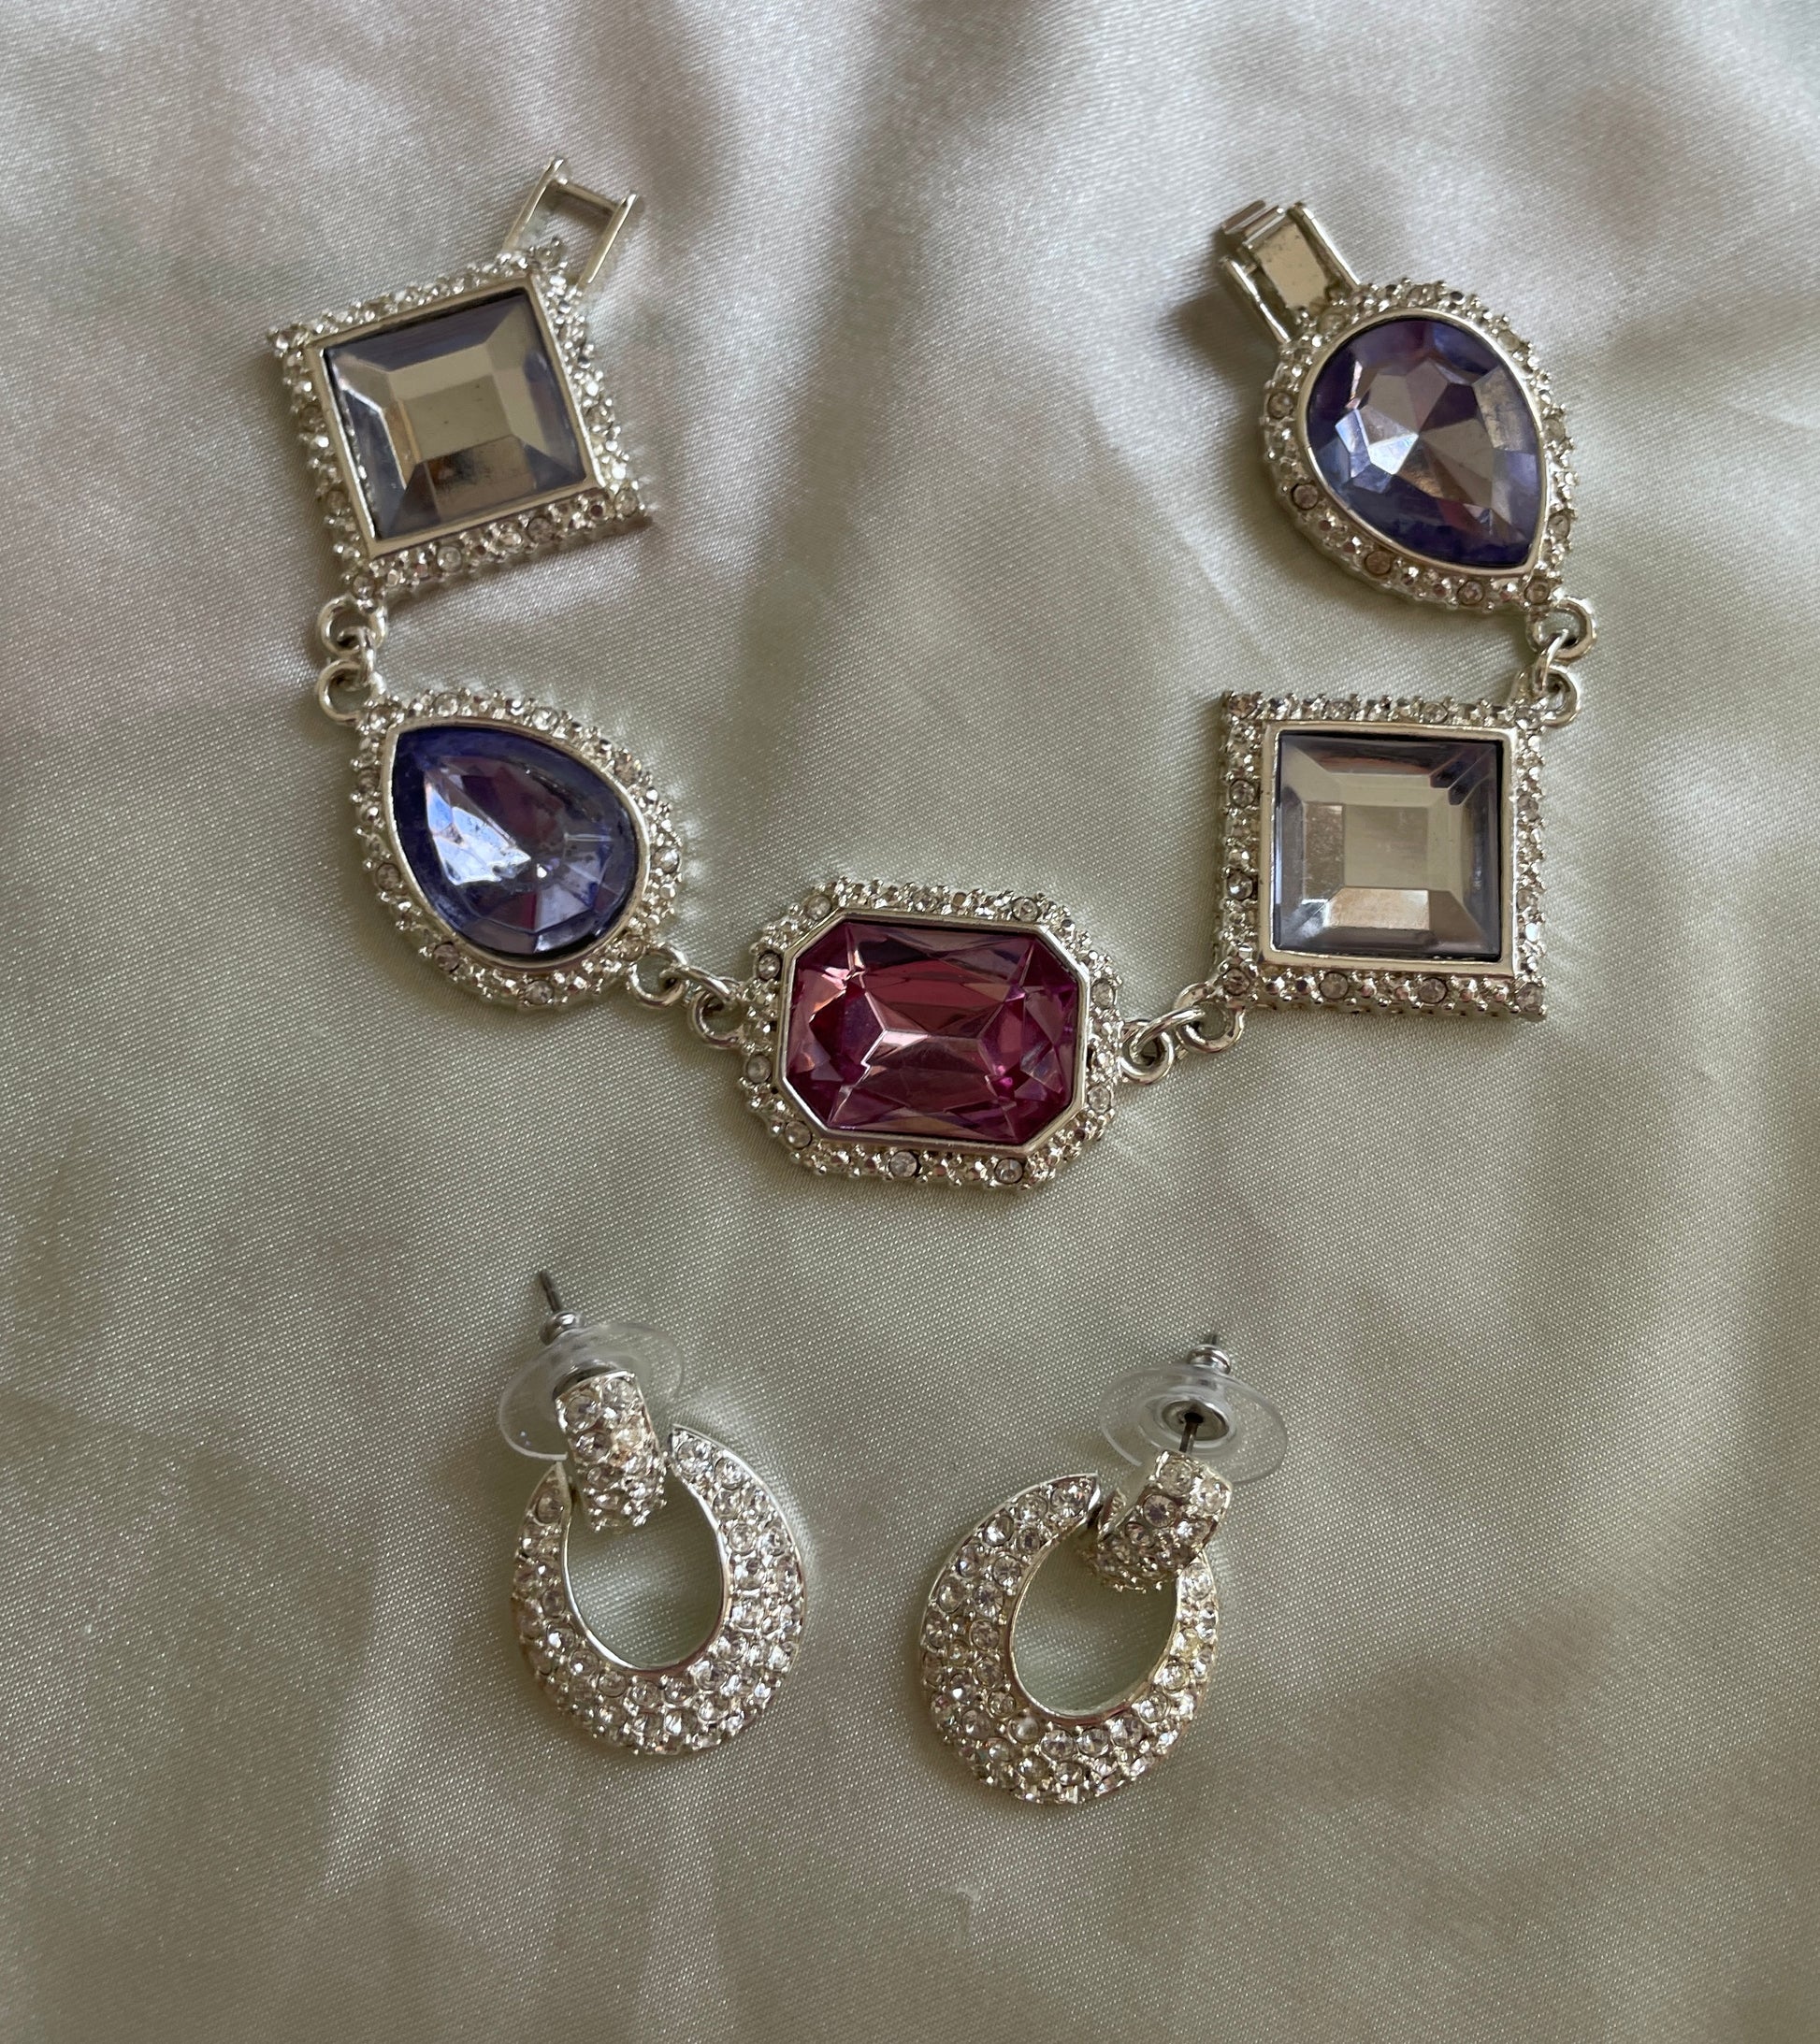  2000s Bracelet Earrings Costume Jewelry